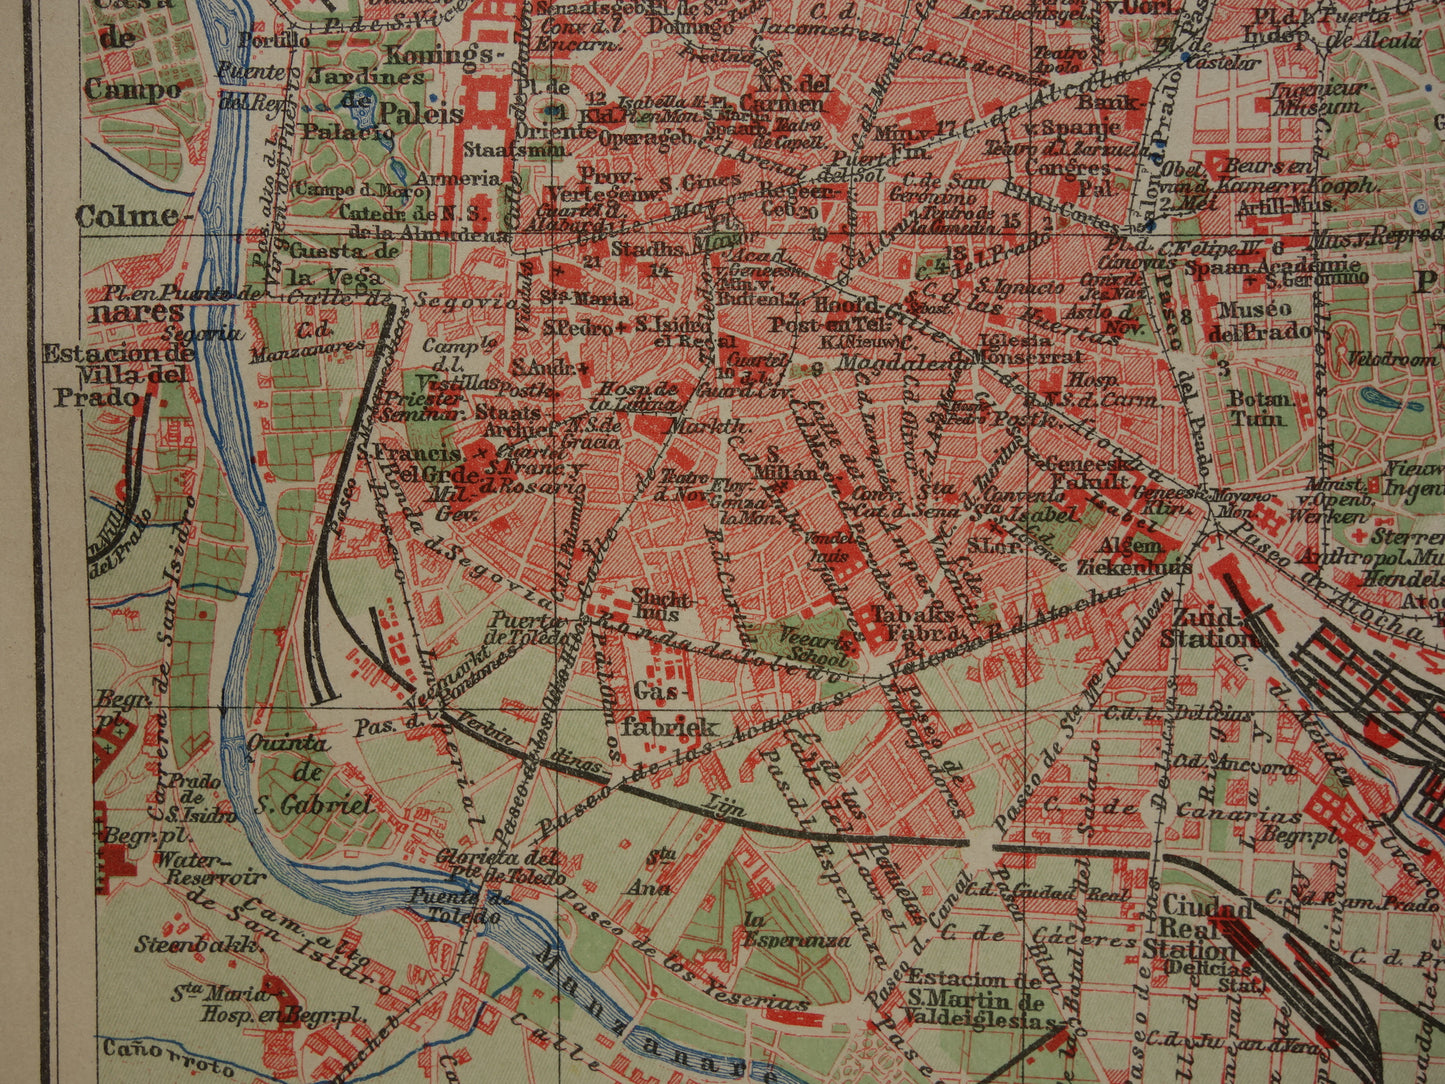 MADRID oude kaart van Madrid Spanje uit 1909 originele antieke plattegrond vintage landkaart